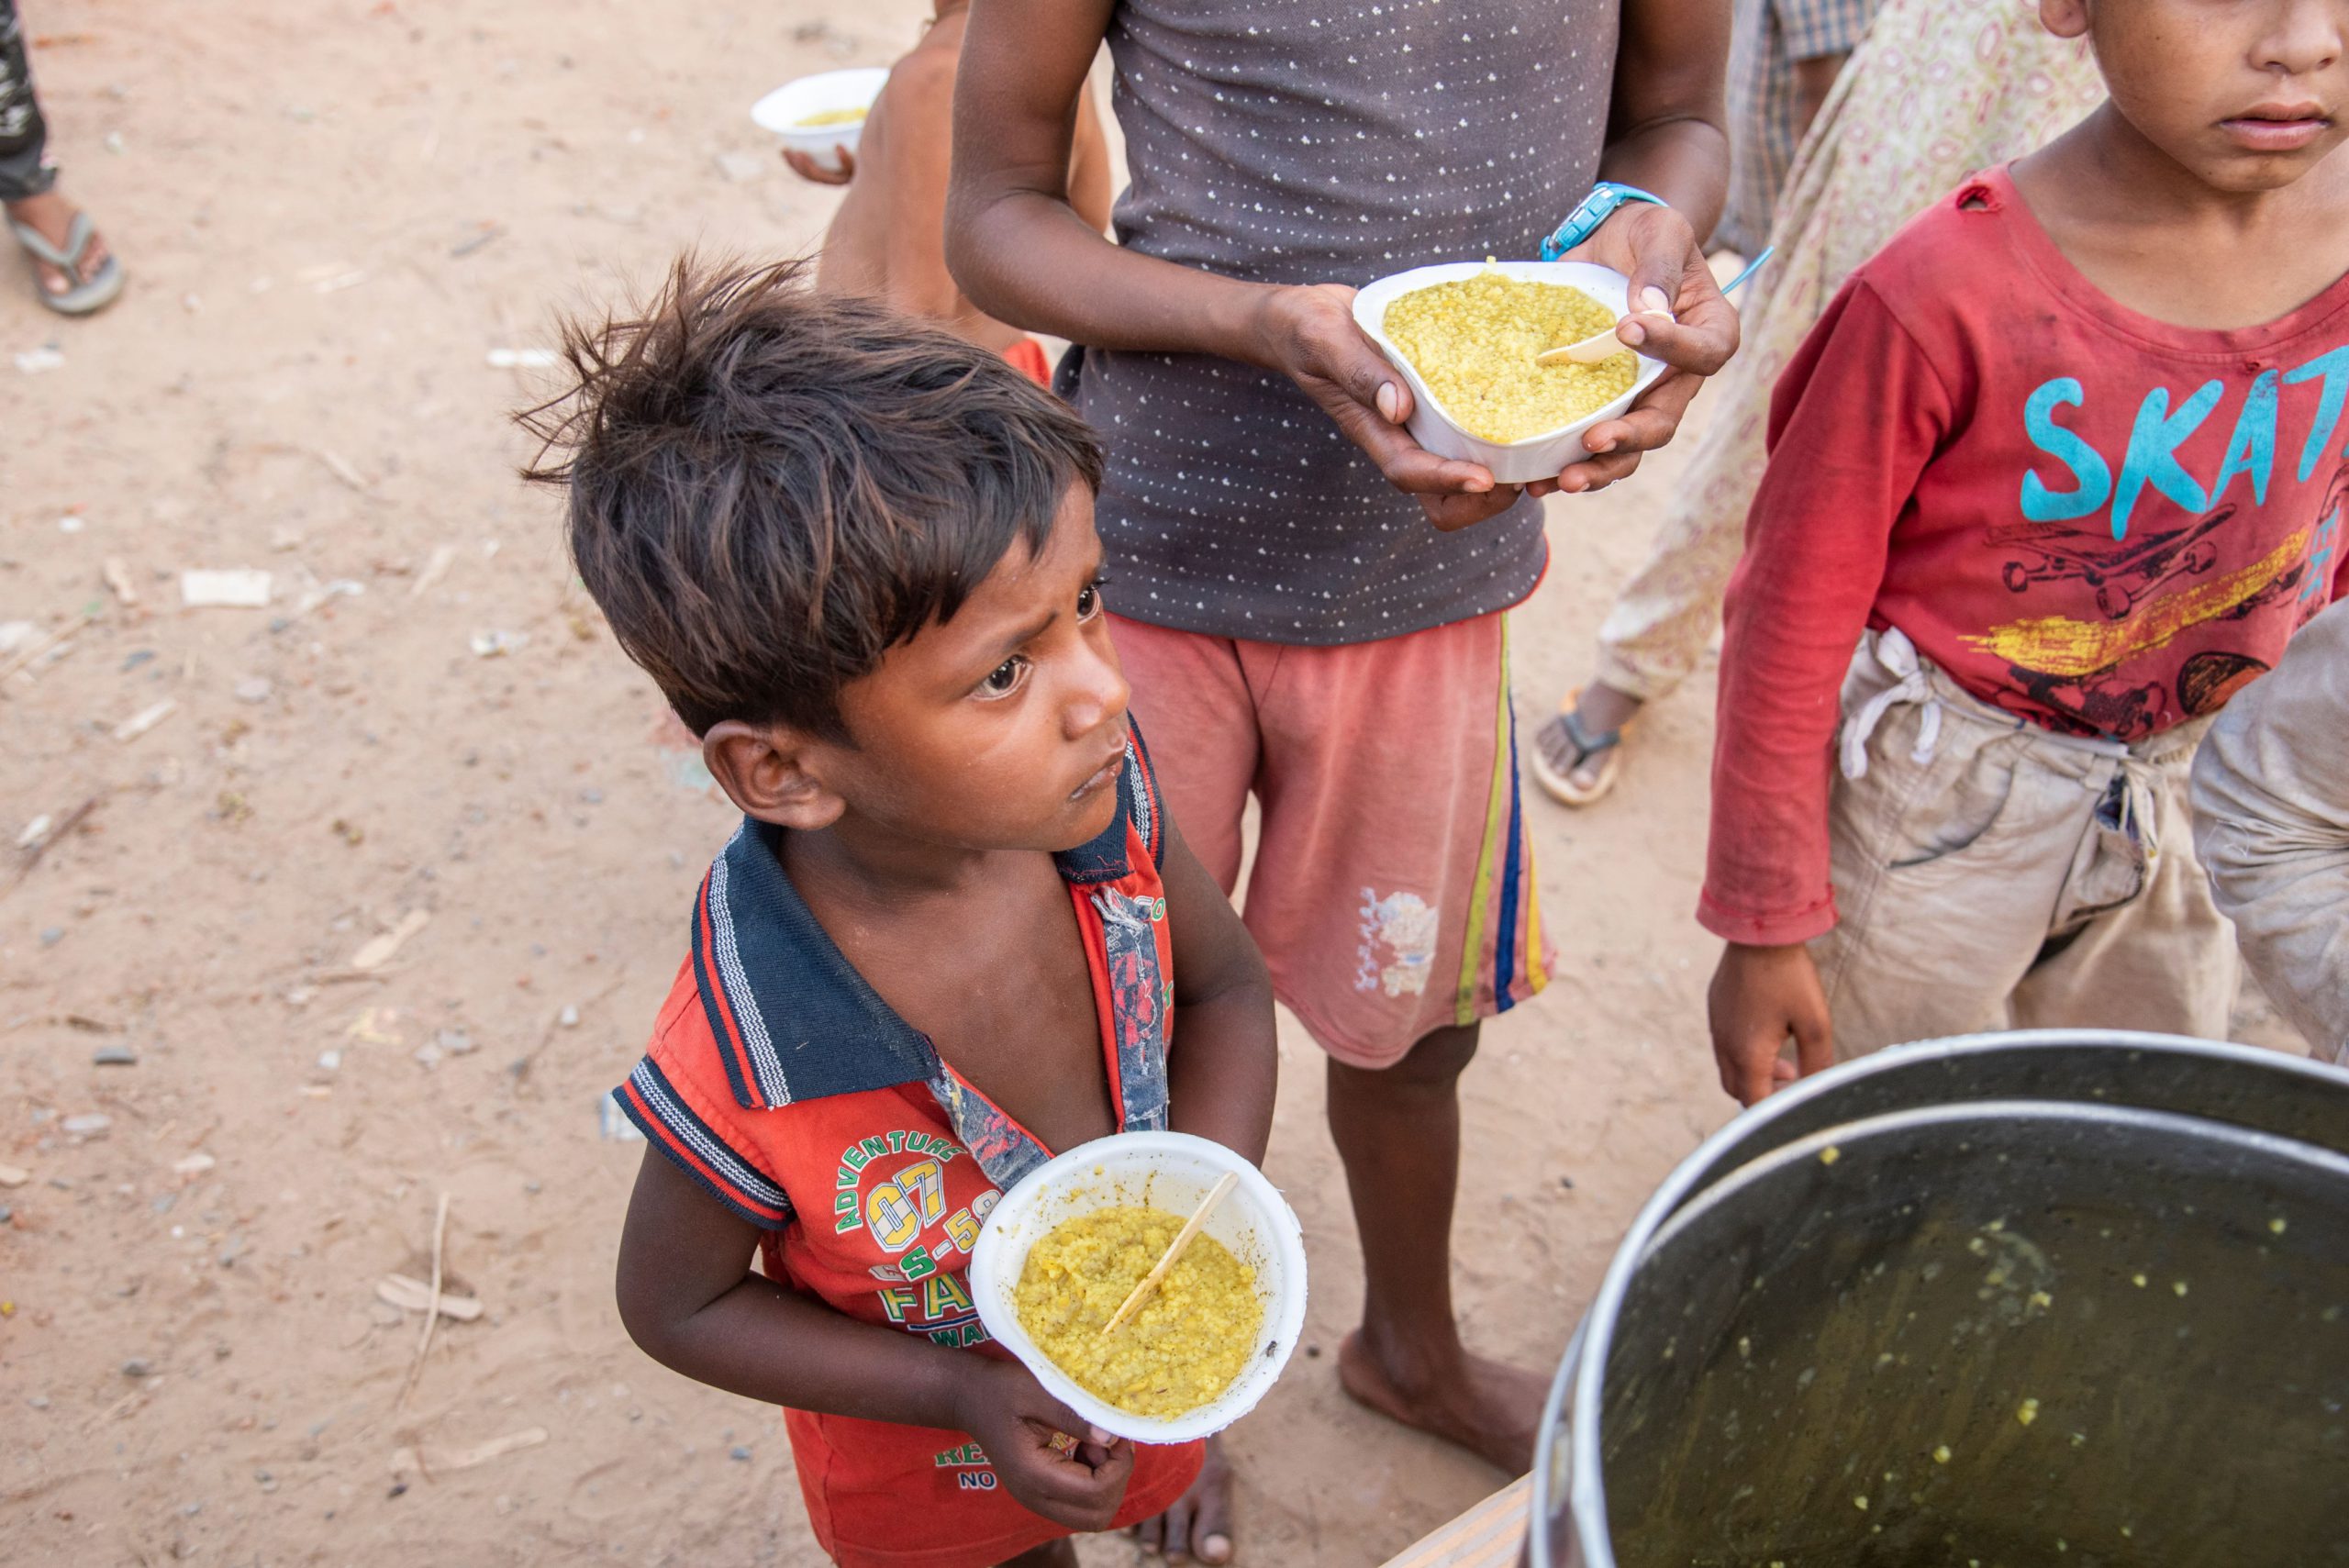 How malnutrition impacts children